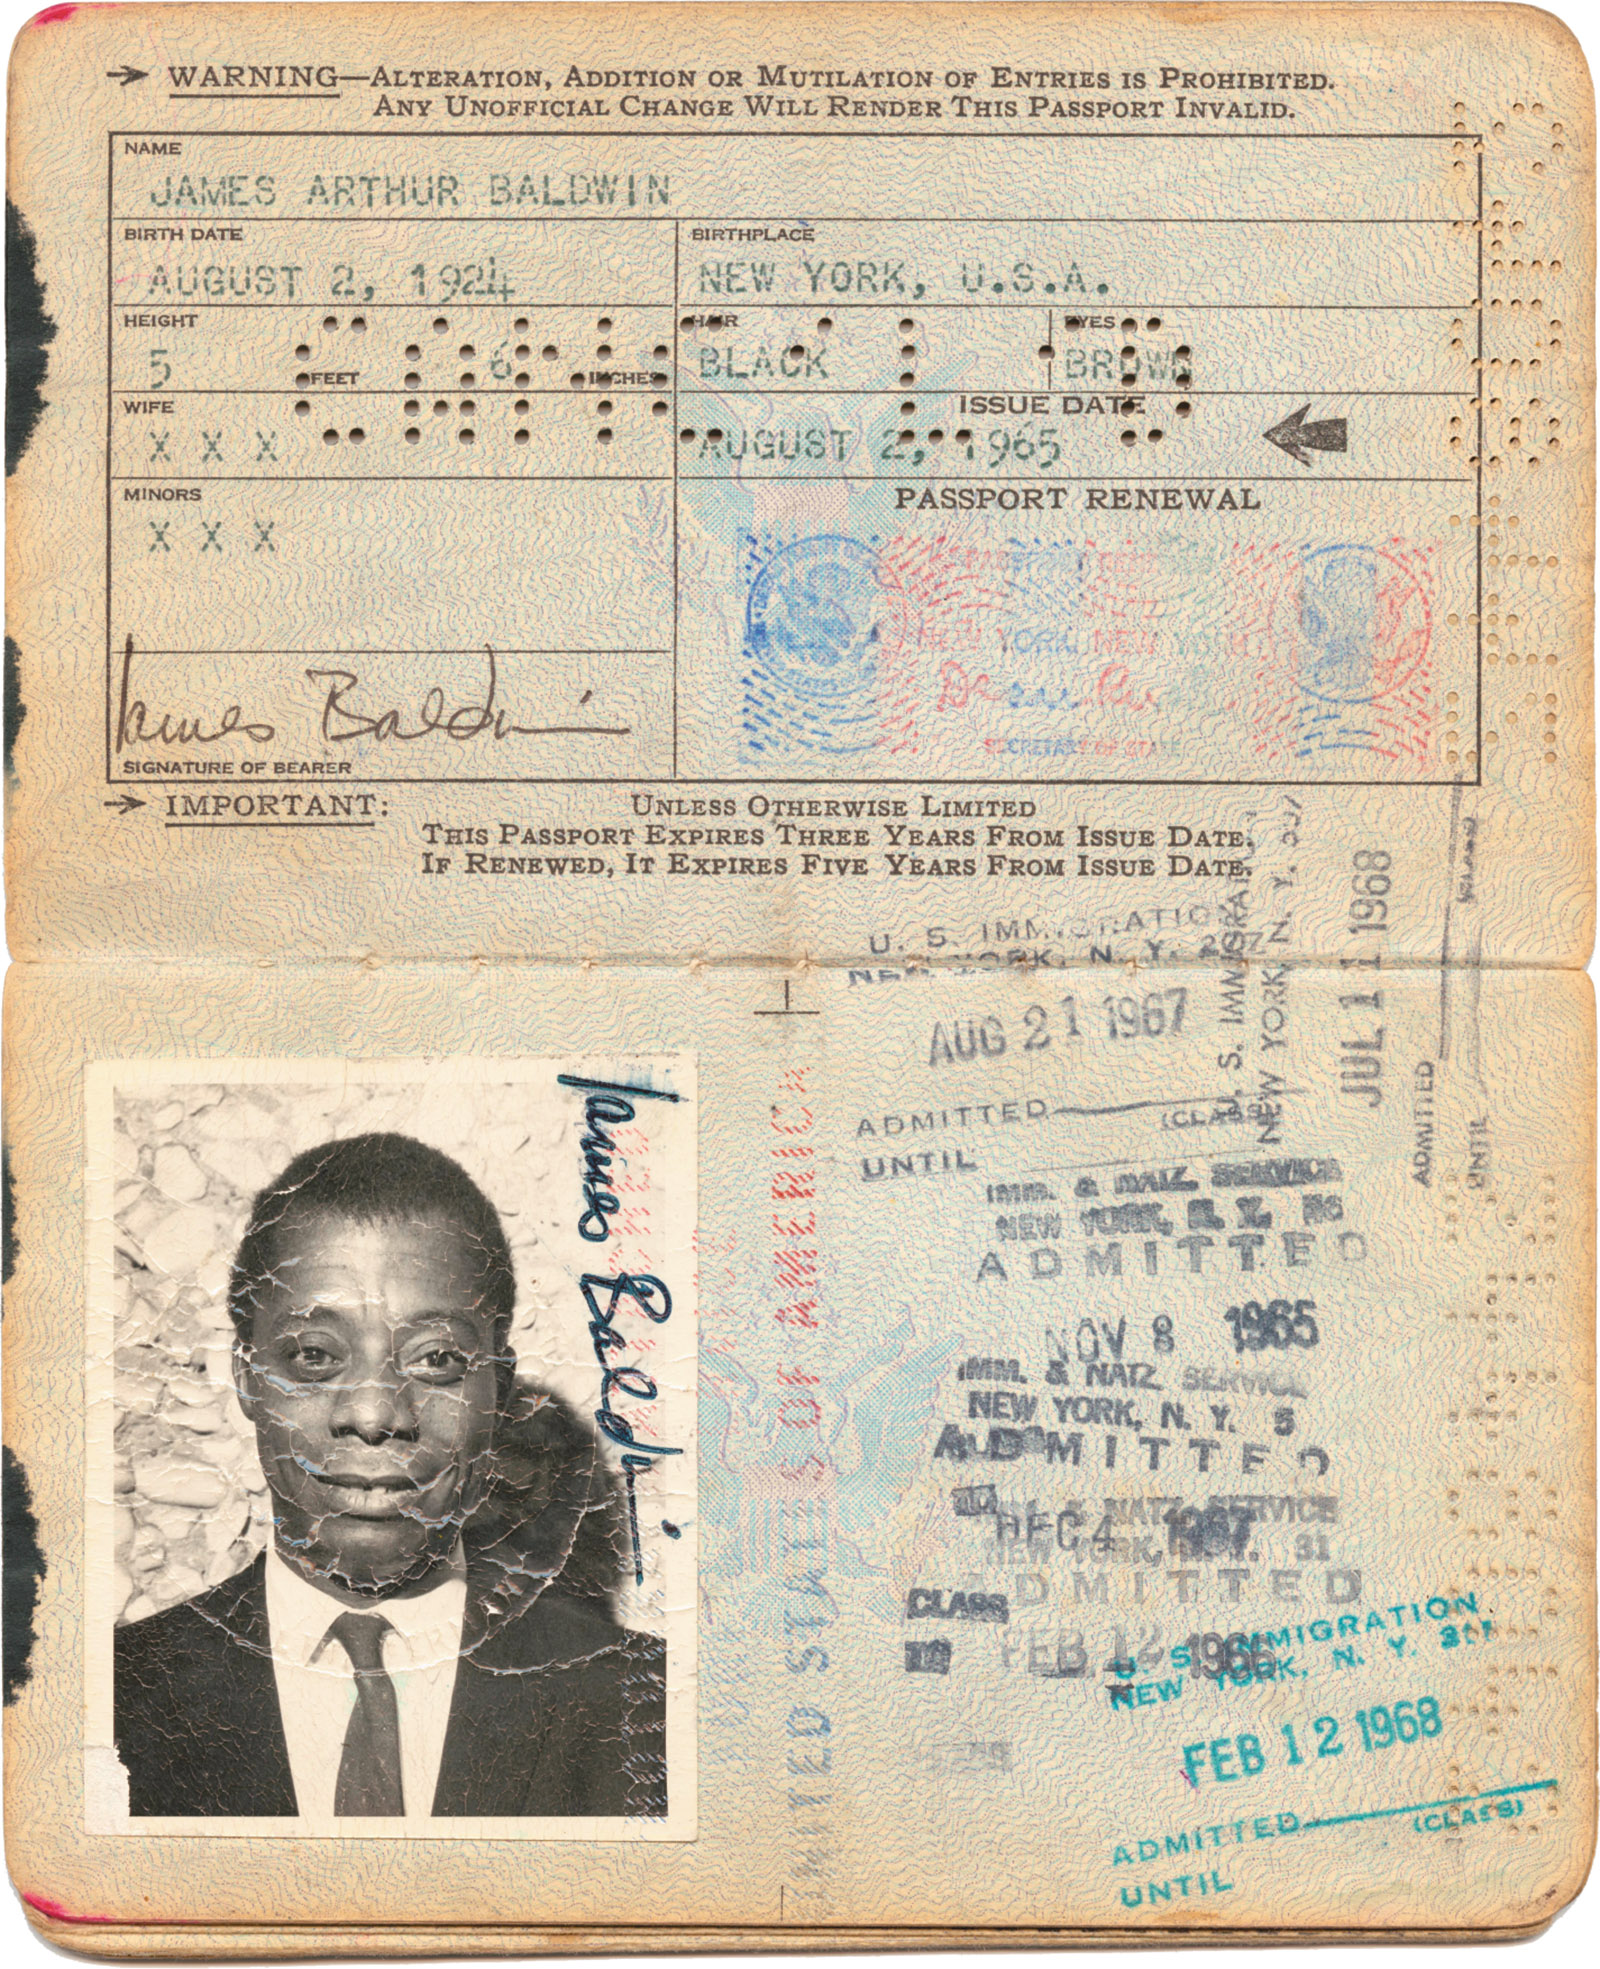 James Baldwin’s passport, issued in 1965